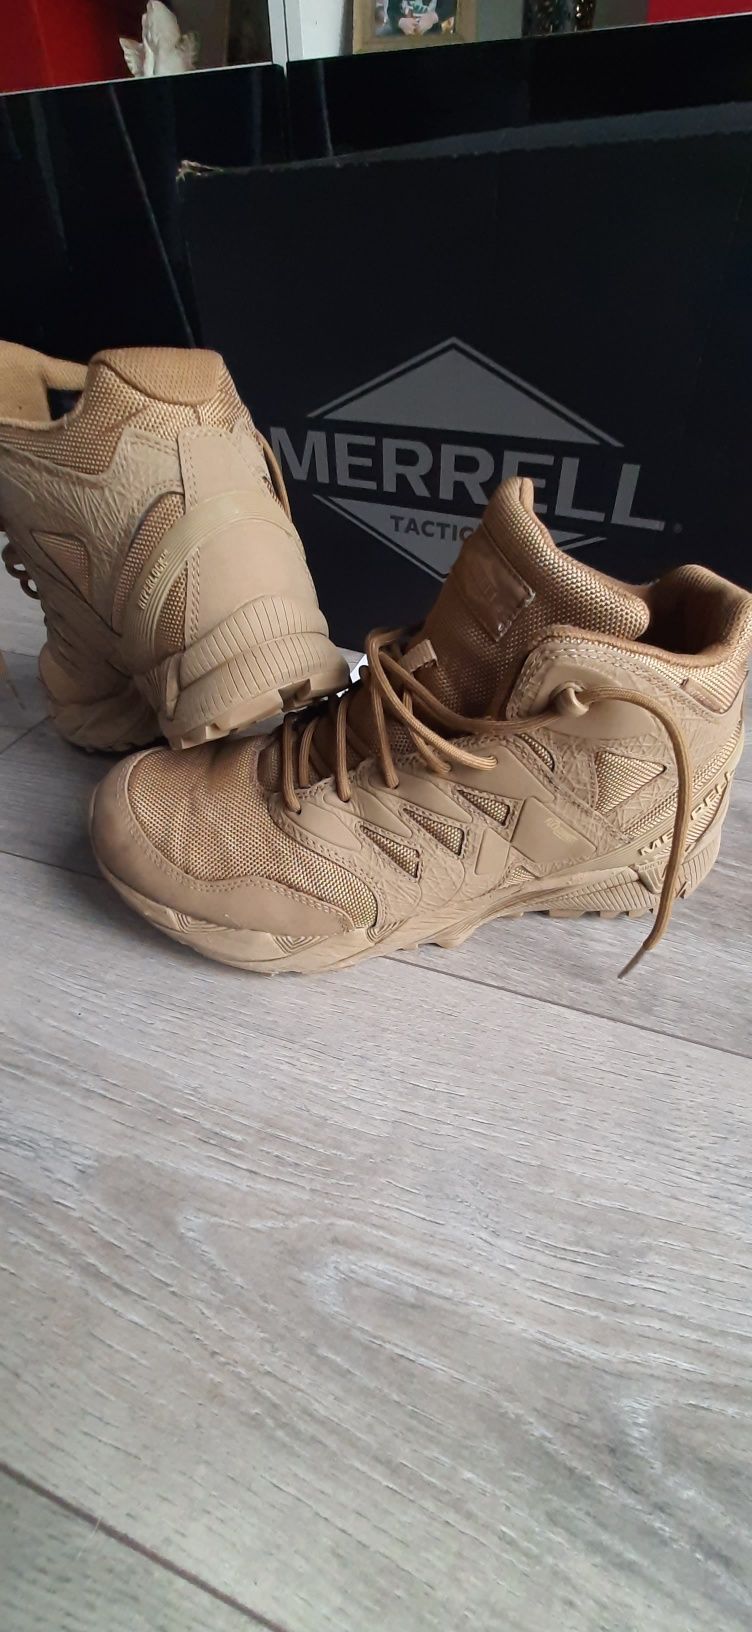 buty taktyczne Merrell